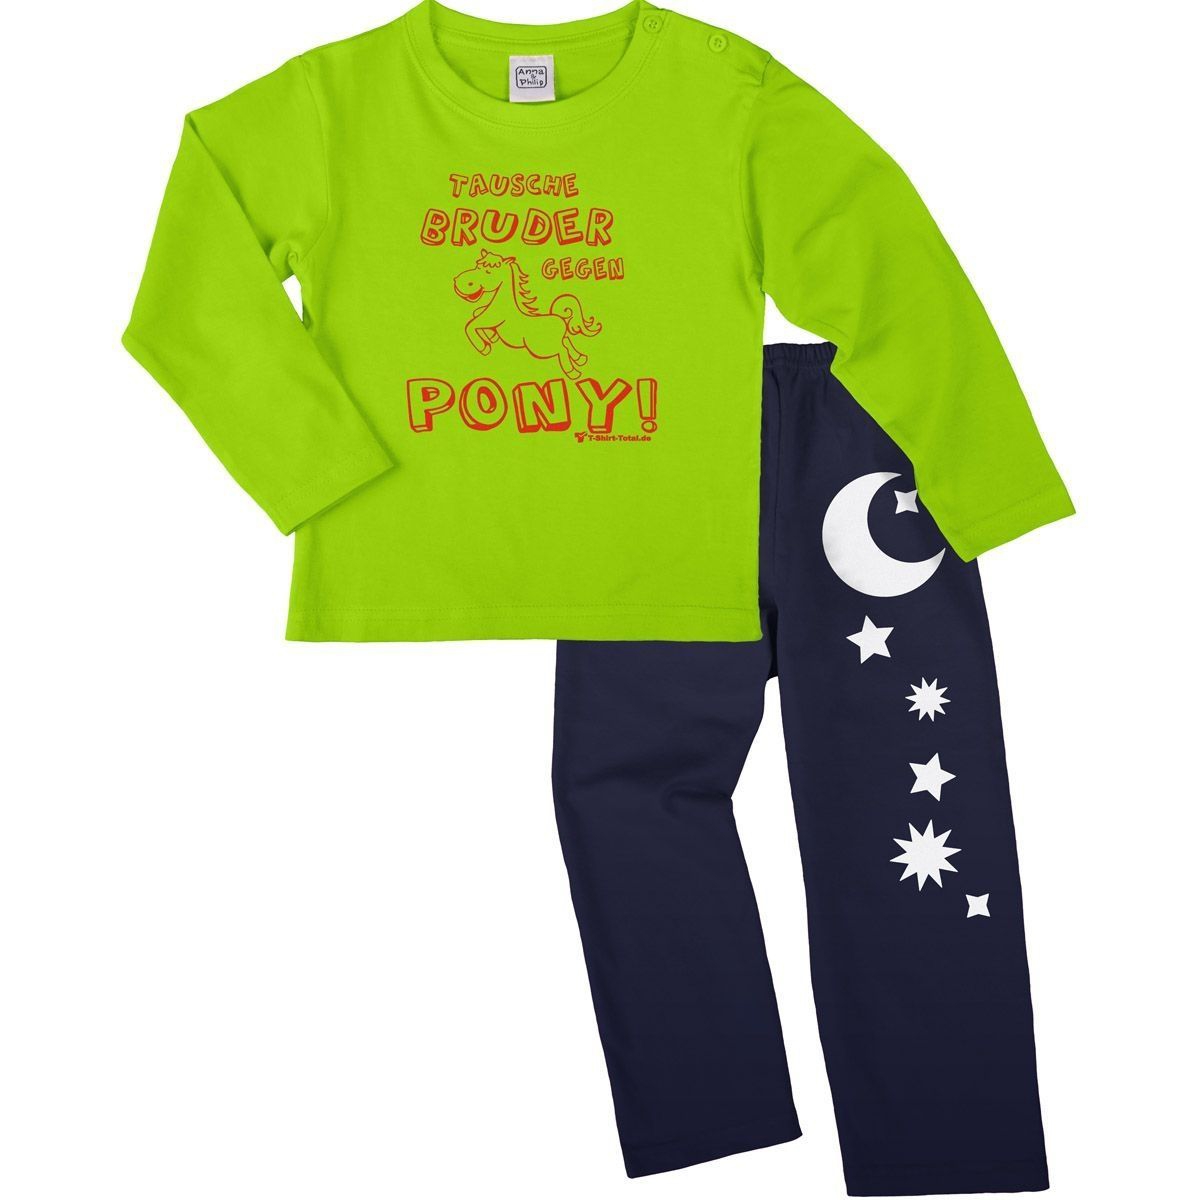 Tausche Bruder gegen Pony Pyjama Set hellgrün / navy 68 / 74